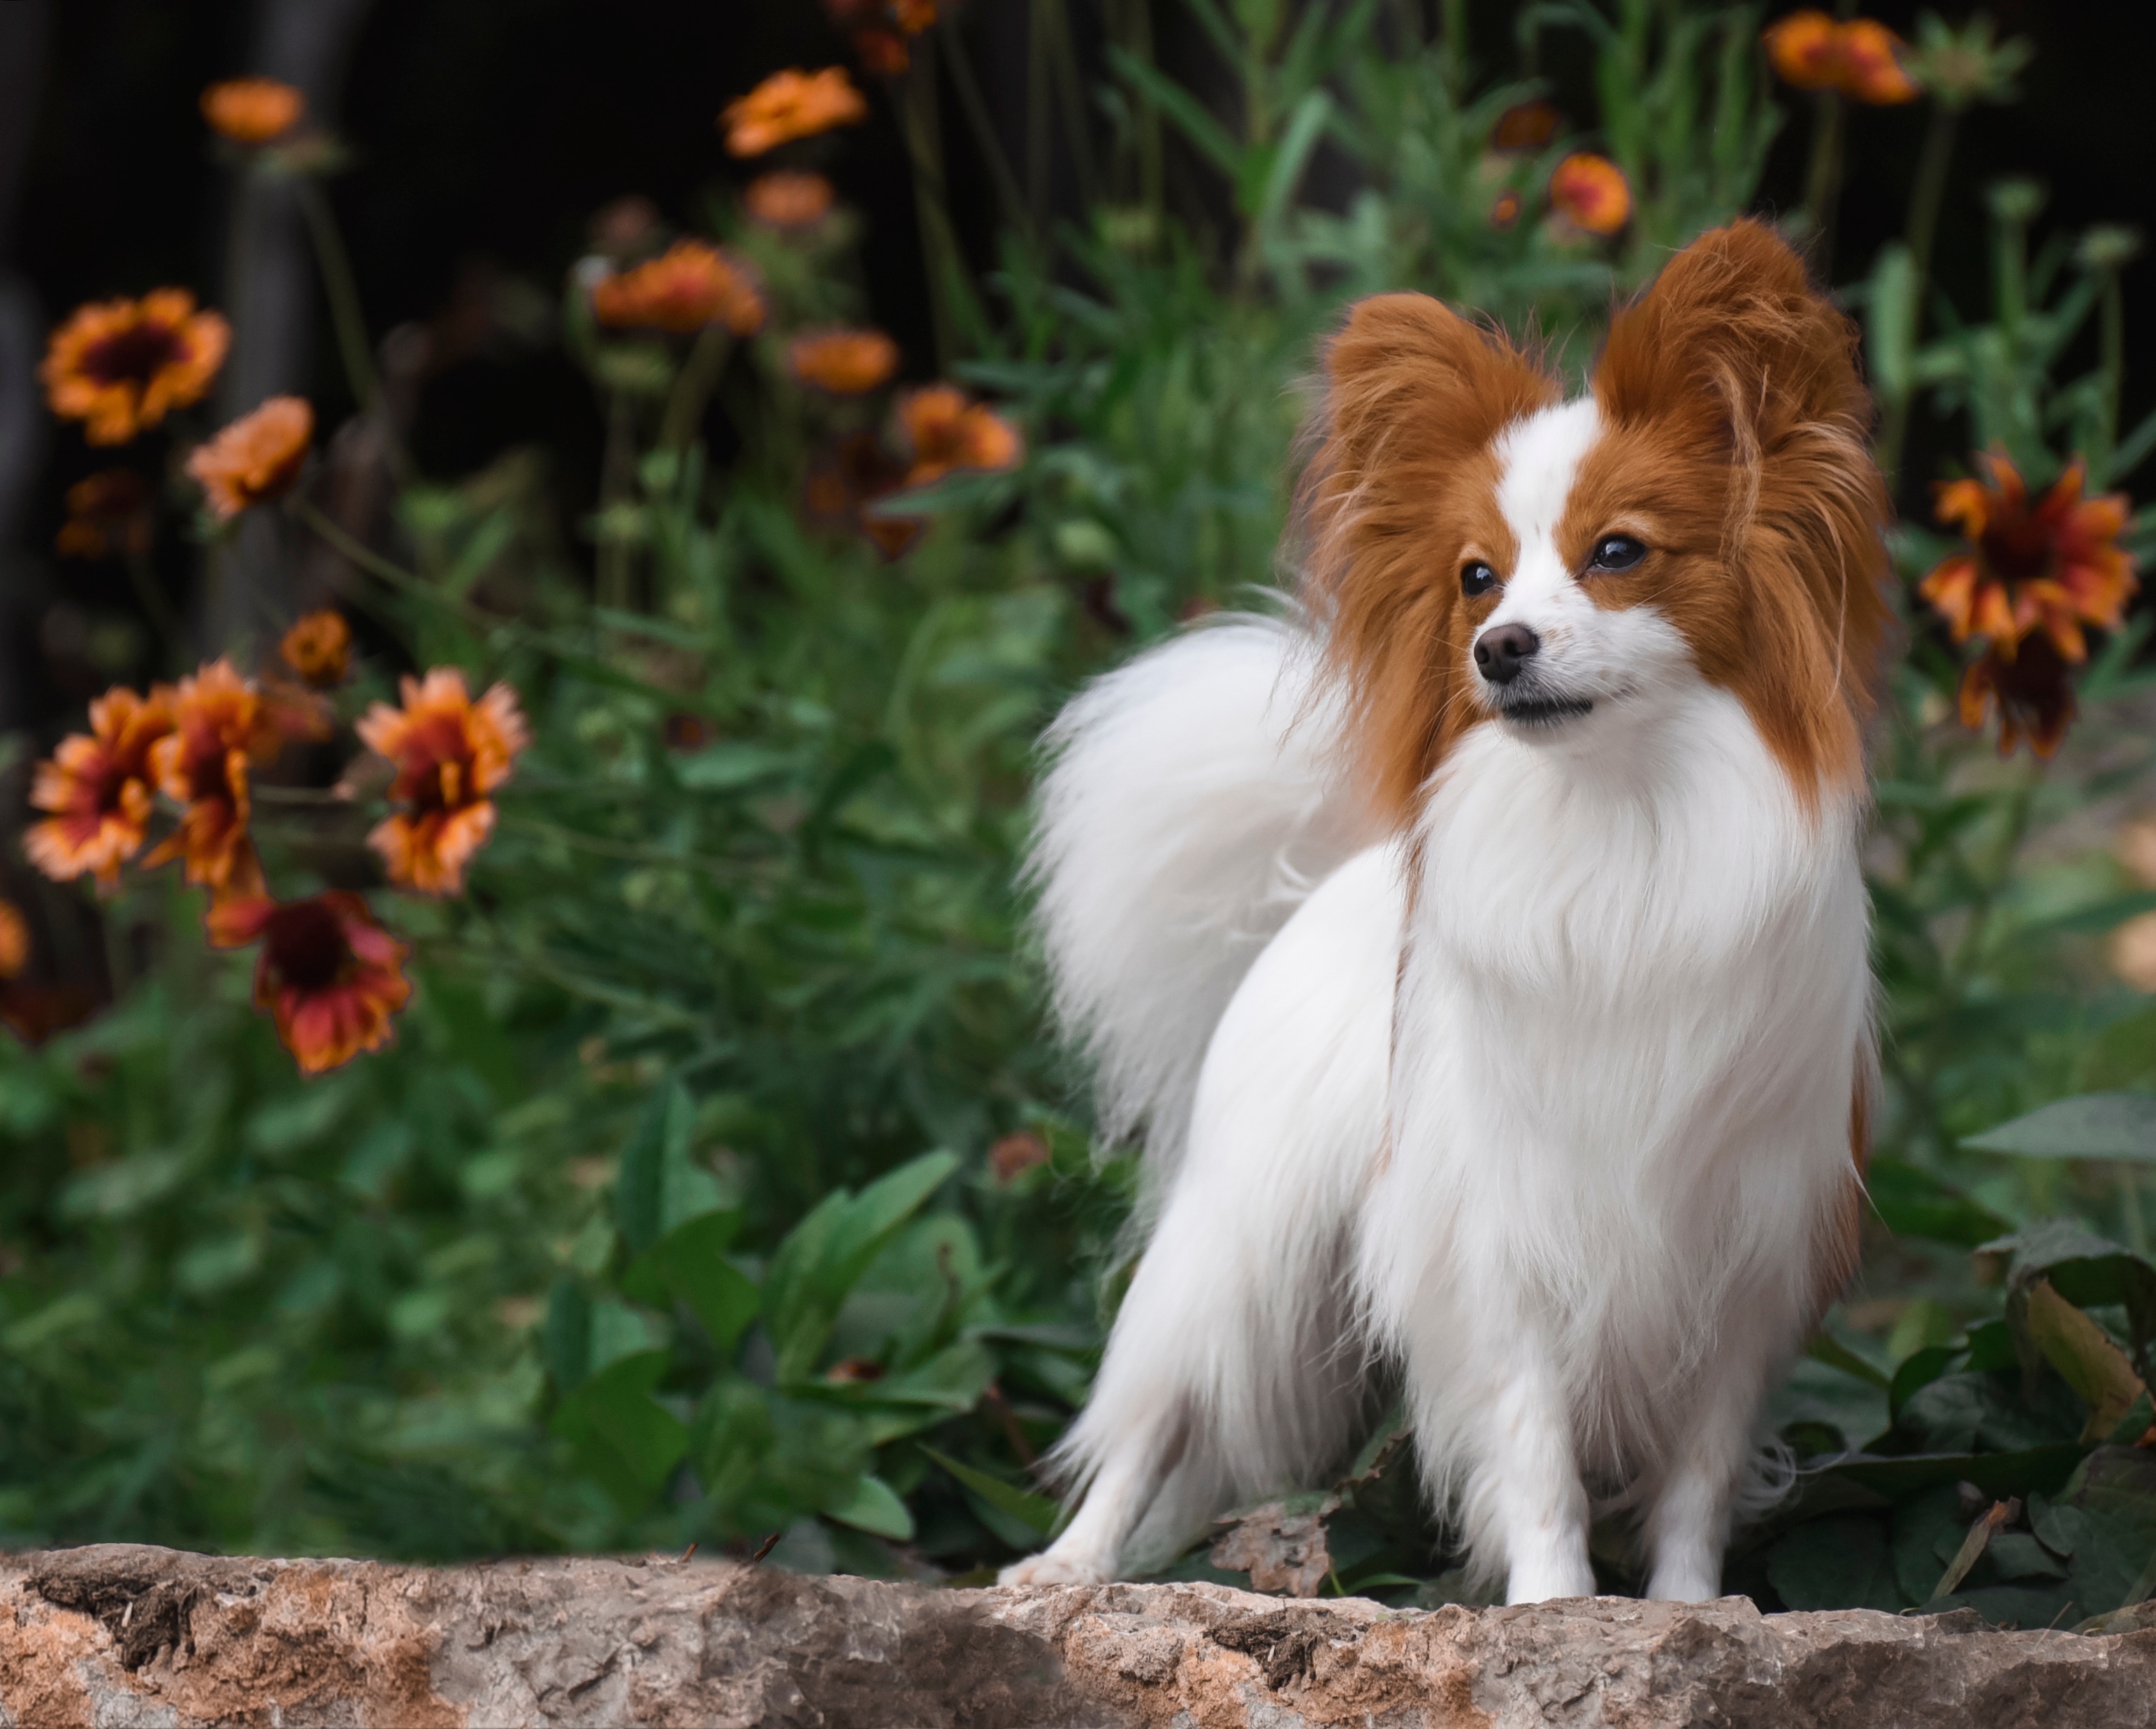 Papillon dog stands among garden flowers